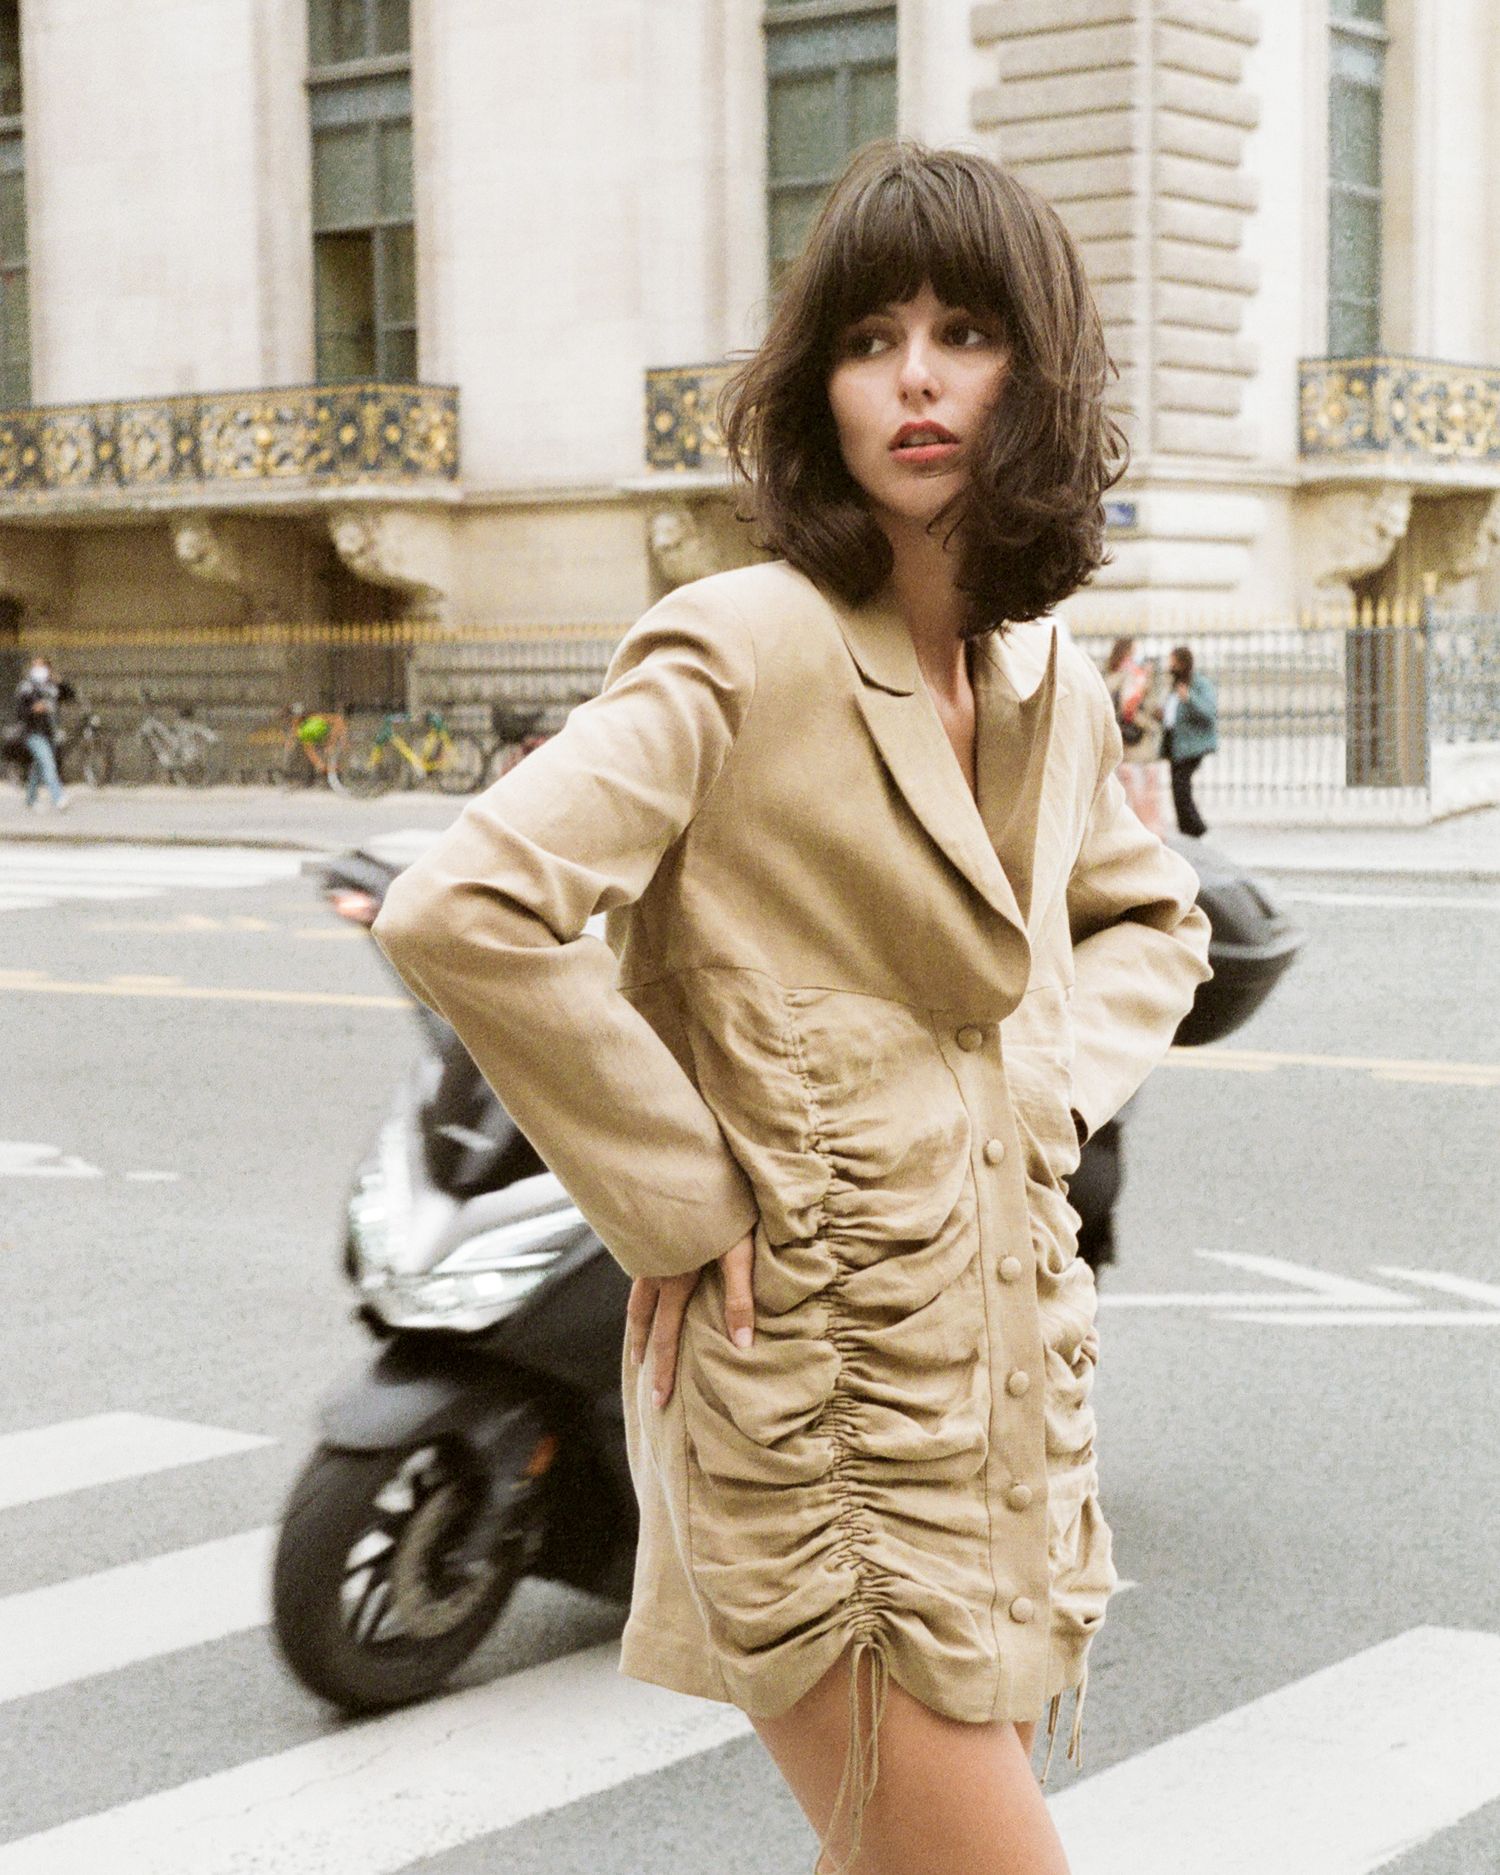 Beige Blazer Dress shot by Lauren Spitznagel on Justine Soranzo in Paris